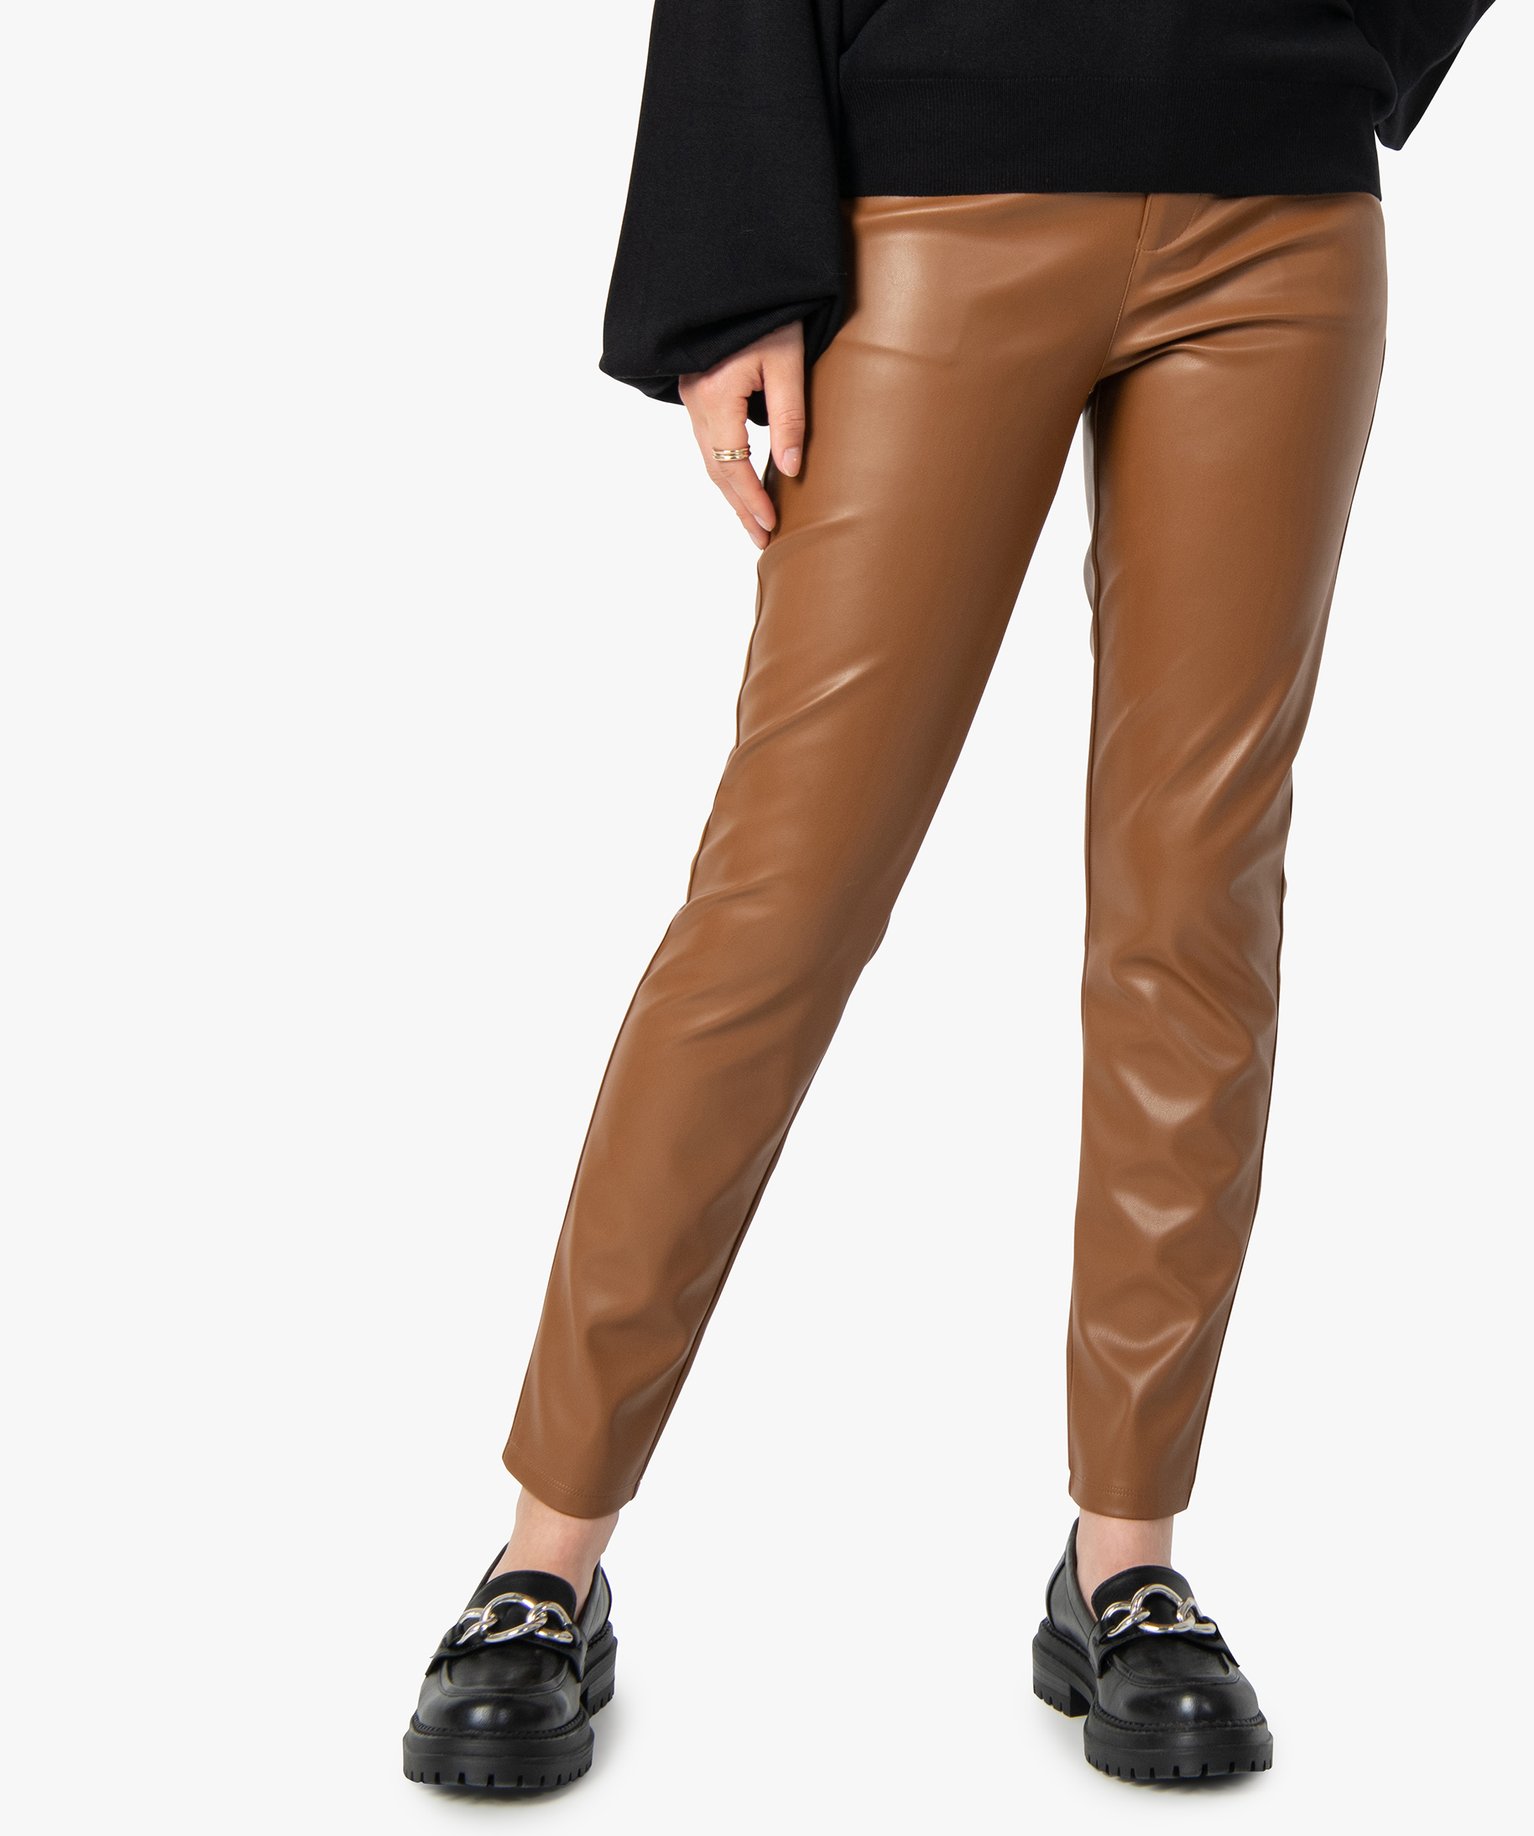 pantalon femme en synthetique imitation cuir orange leggings et jeggings